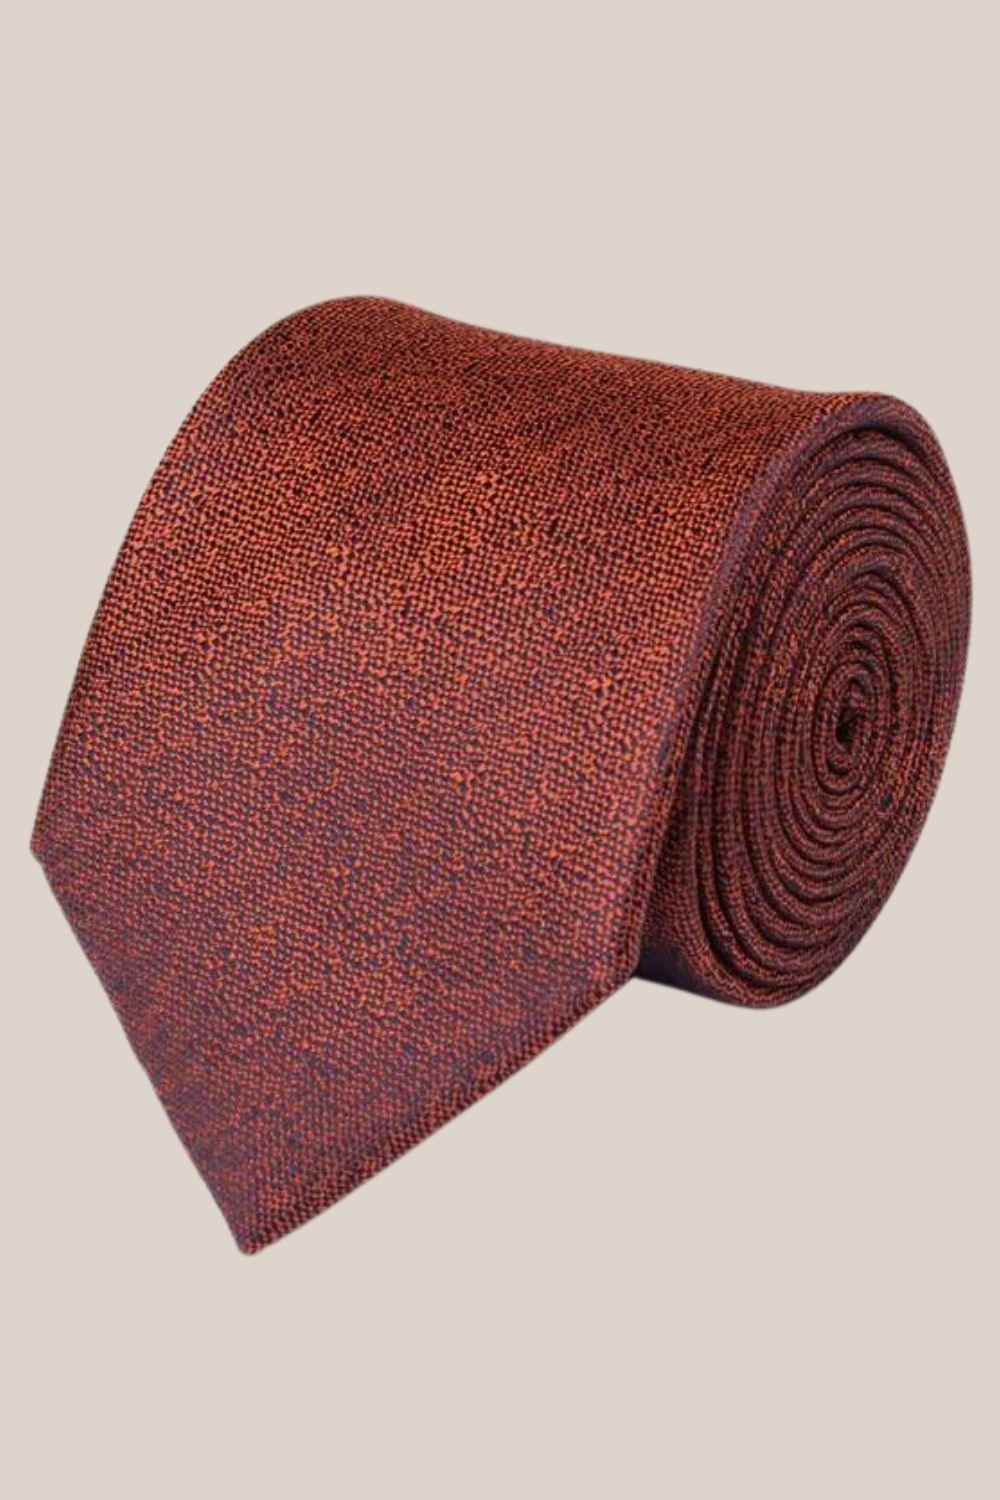 James Harper Texture Tie